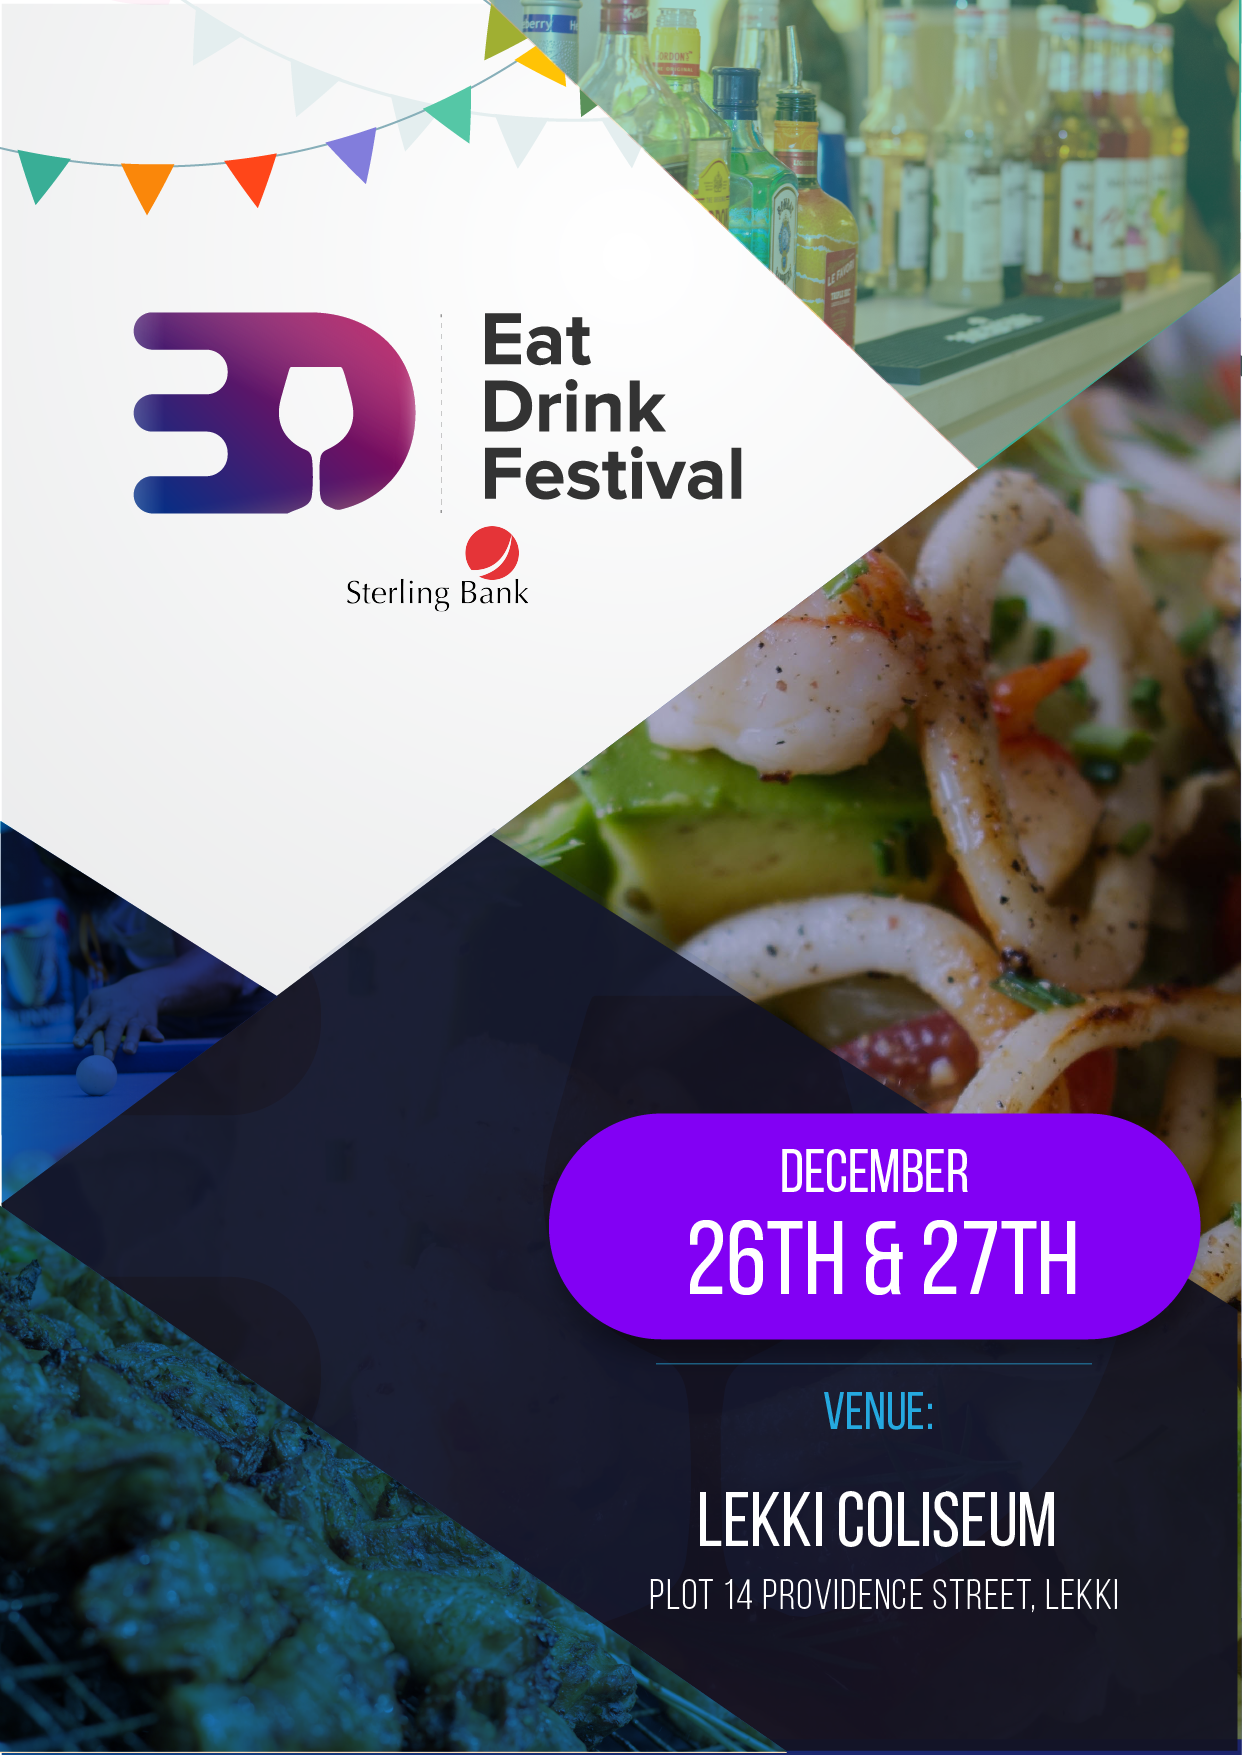 Eatdrinkfestival